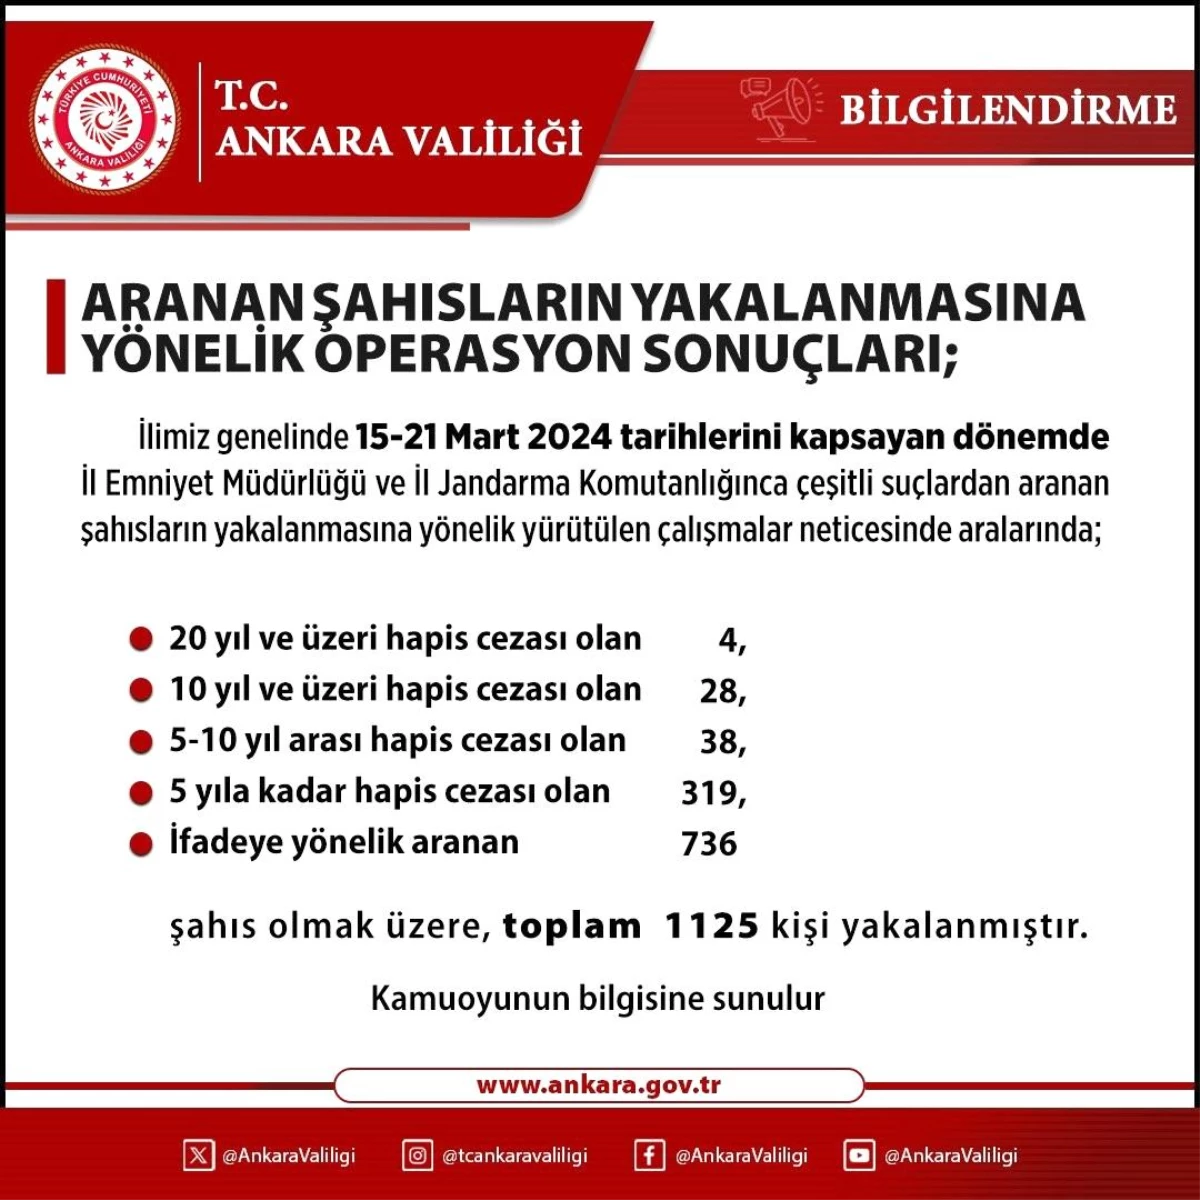 Ankara'da Aranan Şahıslara Yönelik Operasyonlarda Bin 125 Kişi Yakalandı